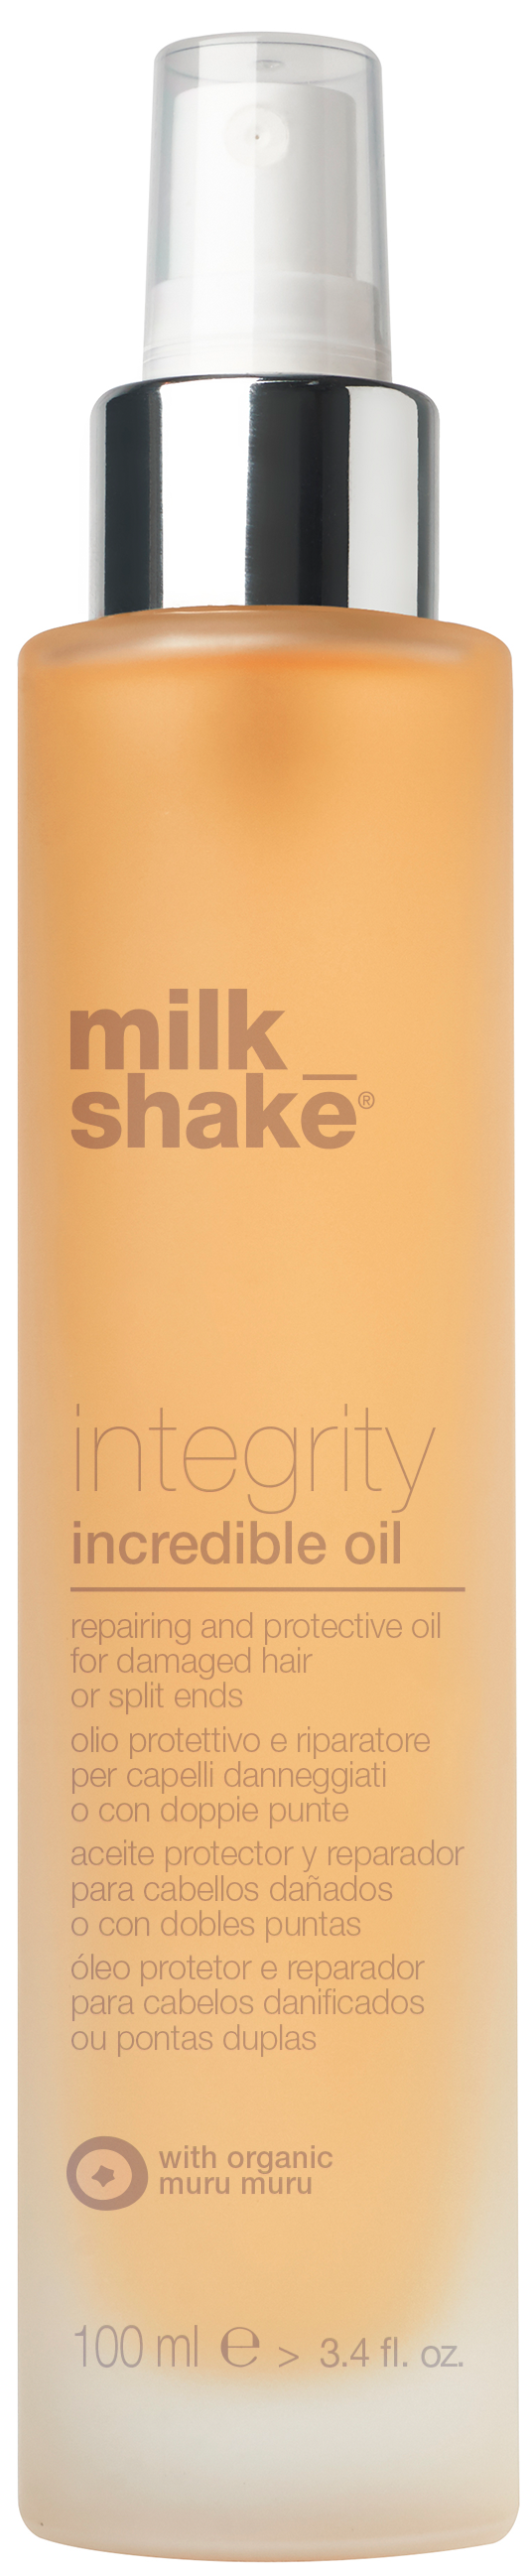 milk_shake - Integrity Incredible Oil 100 ml - Skjønnhet